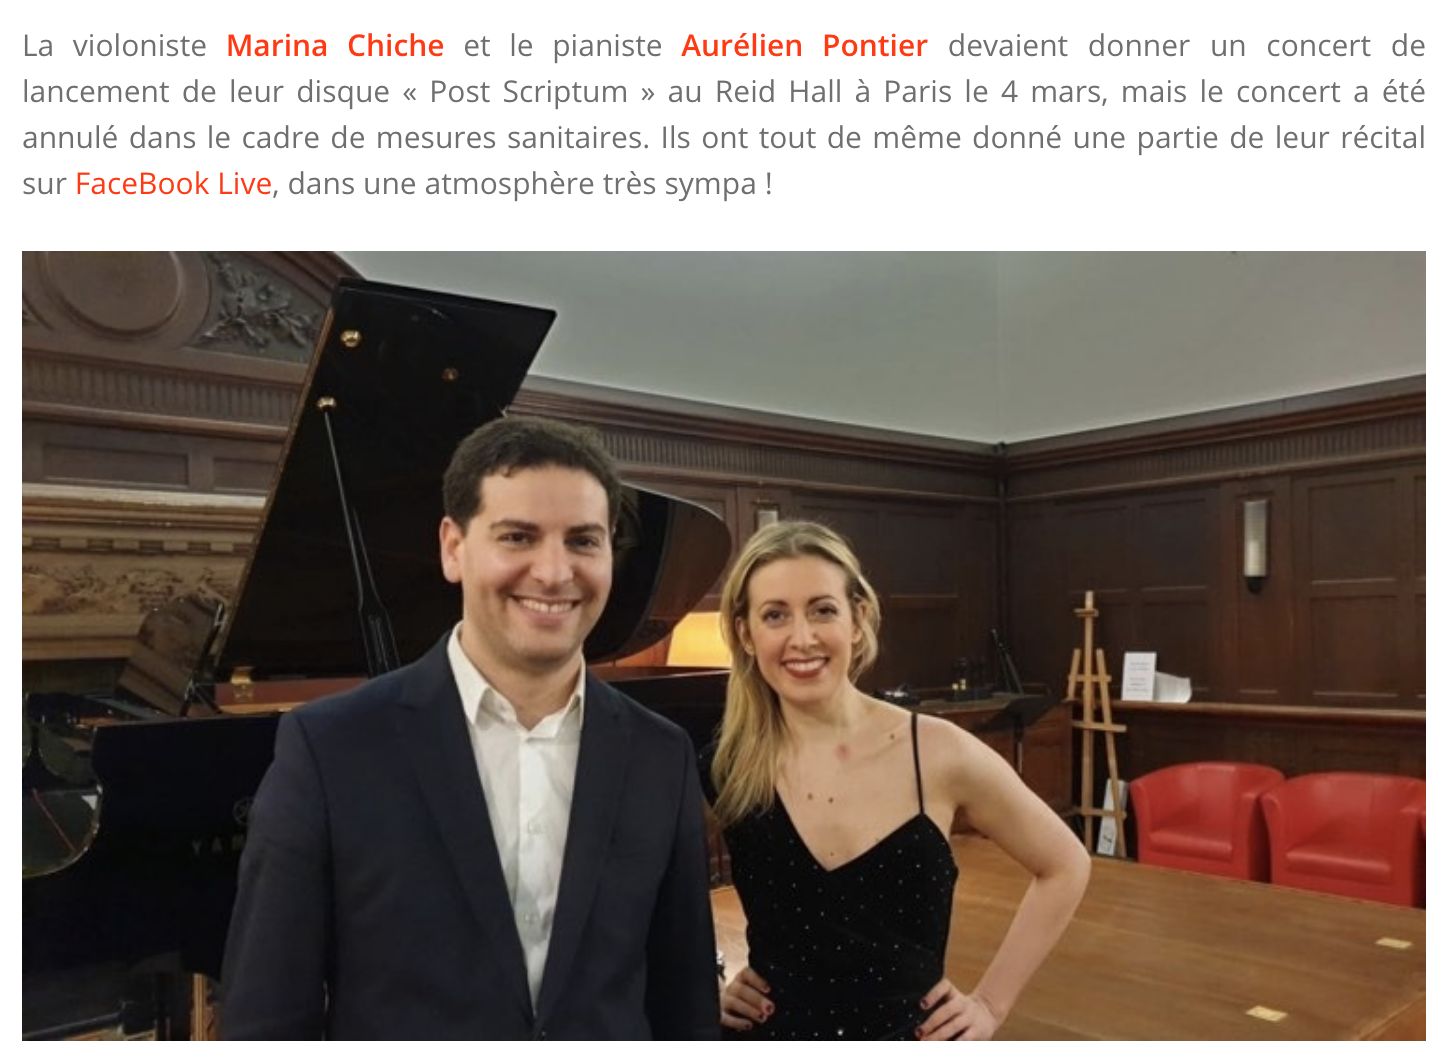 Aurélien Pontier et Marina Chiche